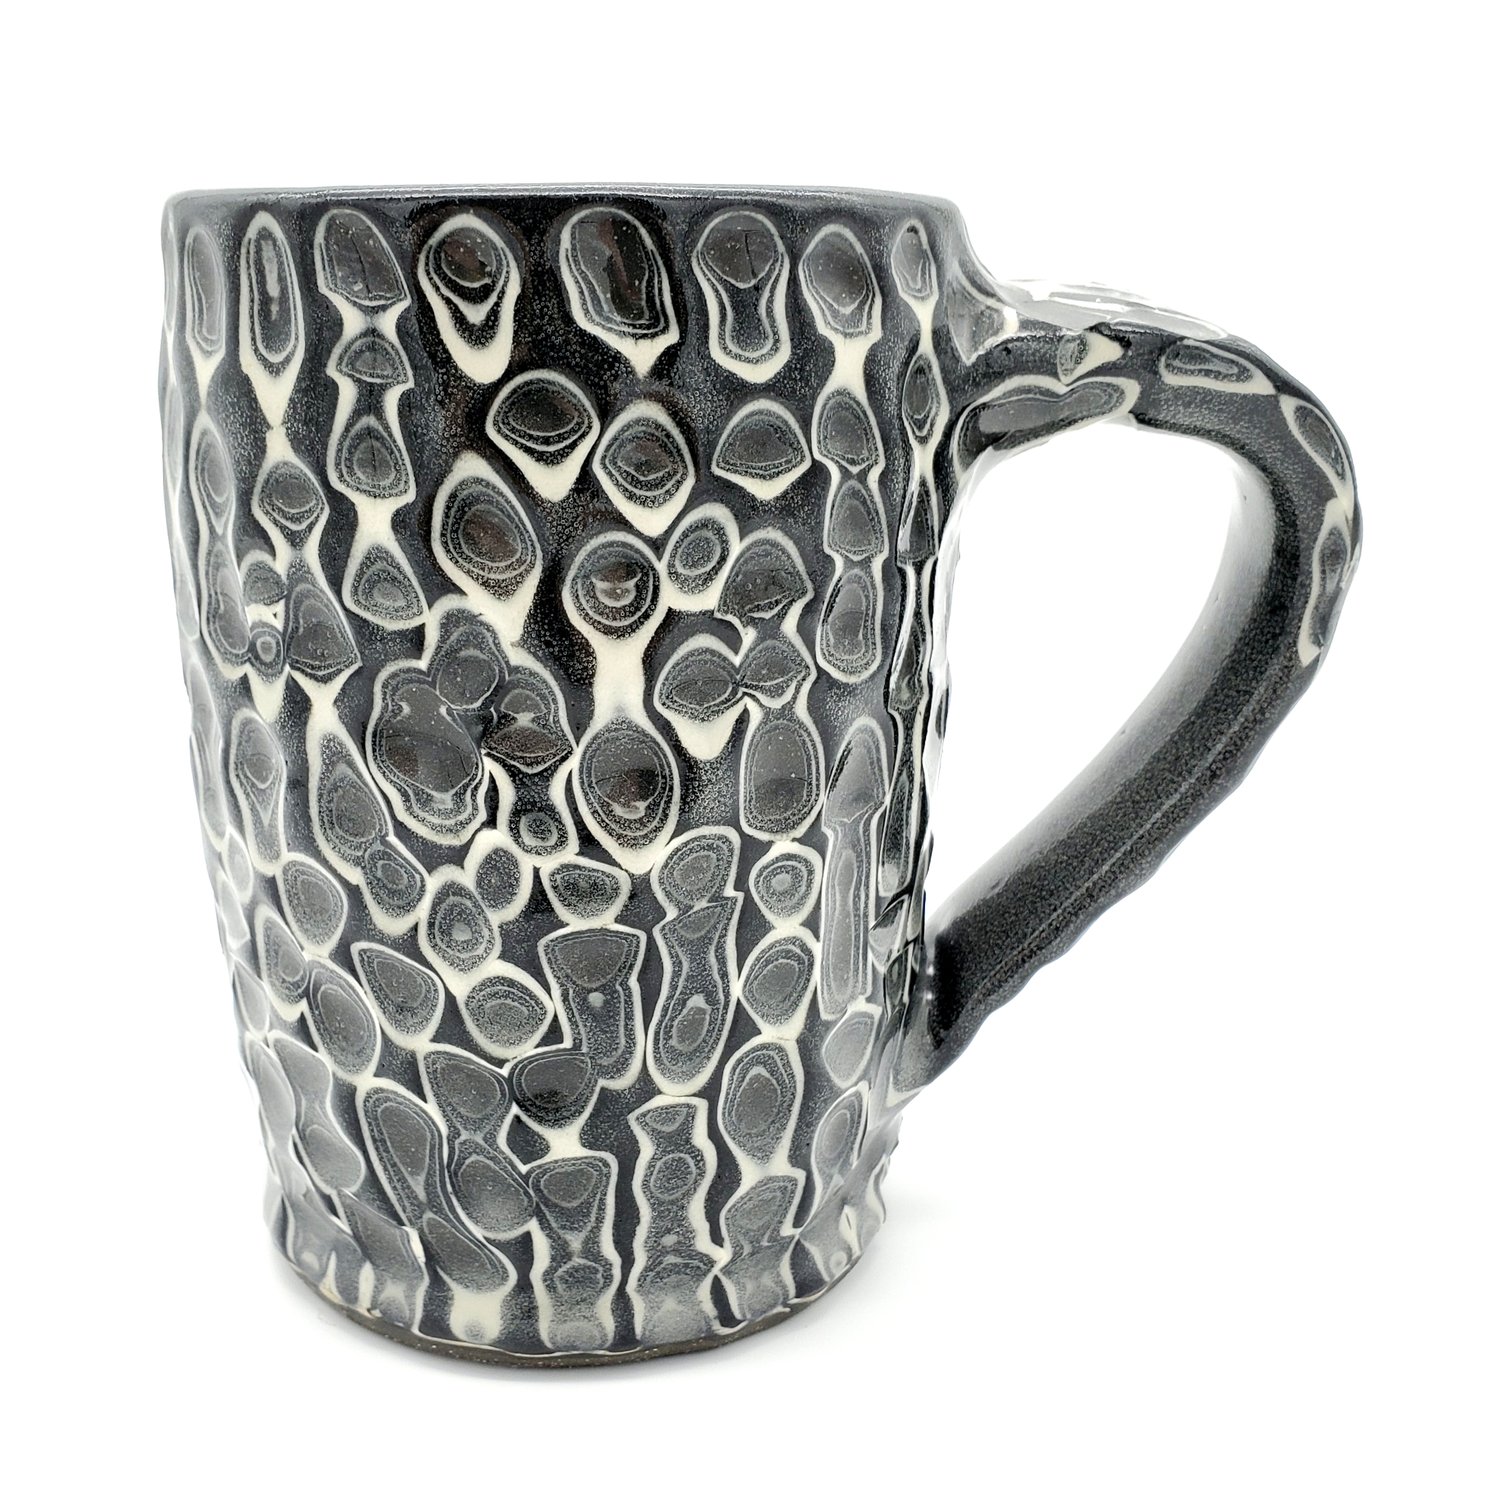 Black & white slip carved mug